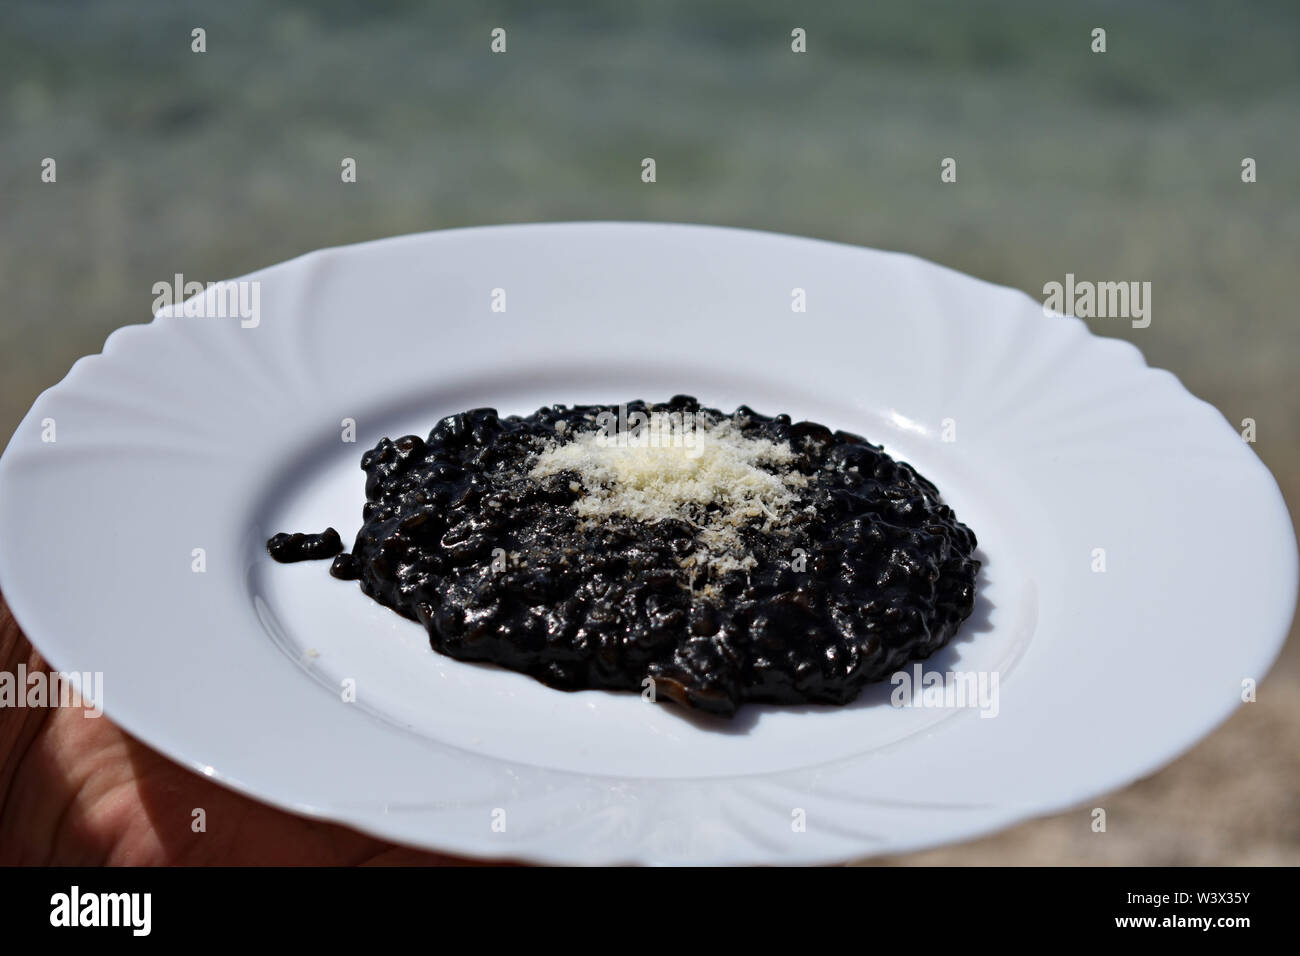 Nero deliziosi risotti serviti dal mare/ cameriere tenendo la piastra del risotto nero / cucina mediterranea - Immagine Foto Stock